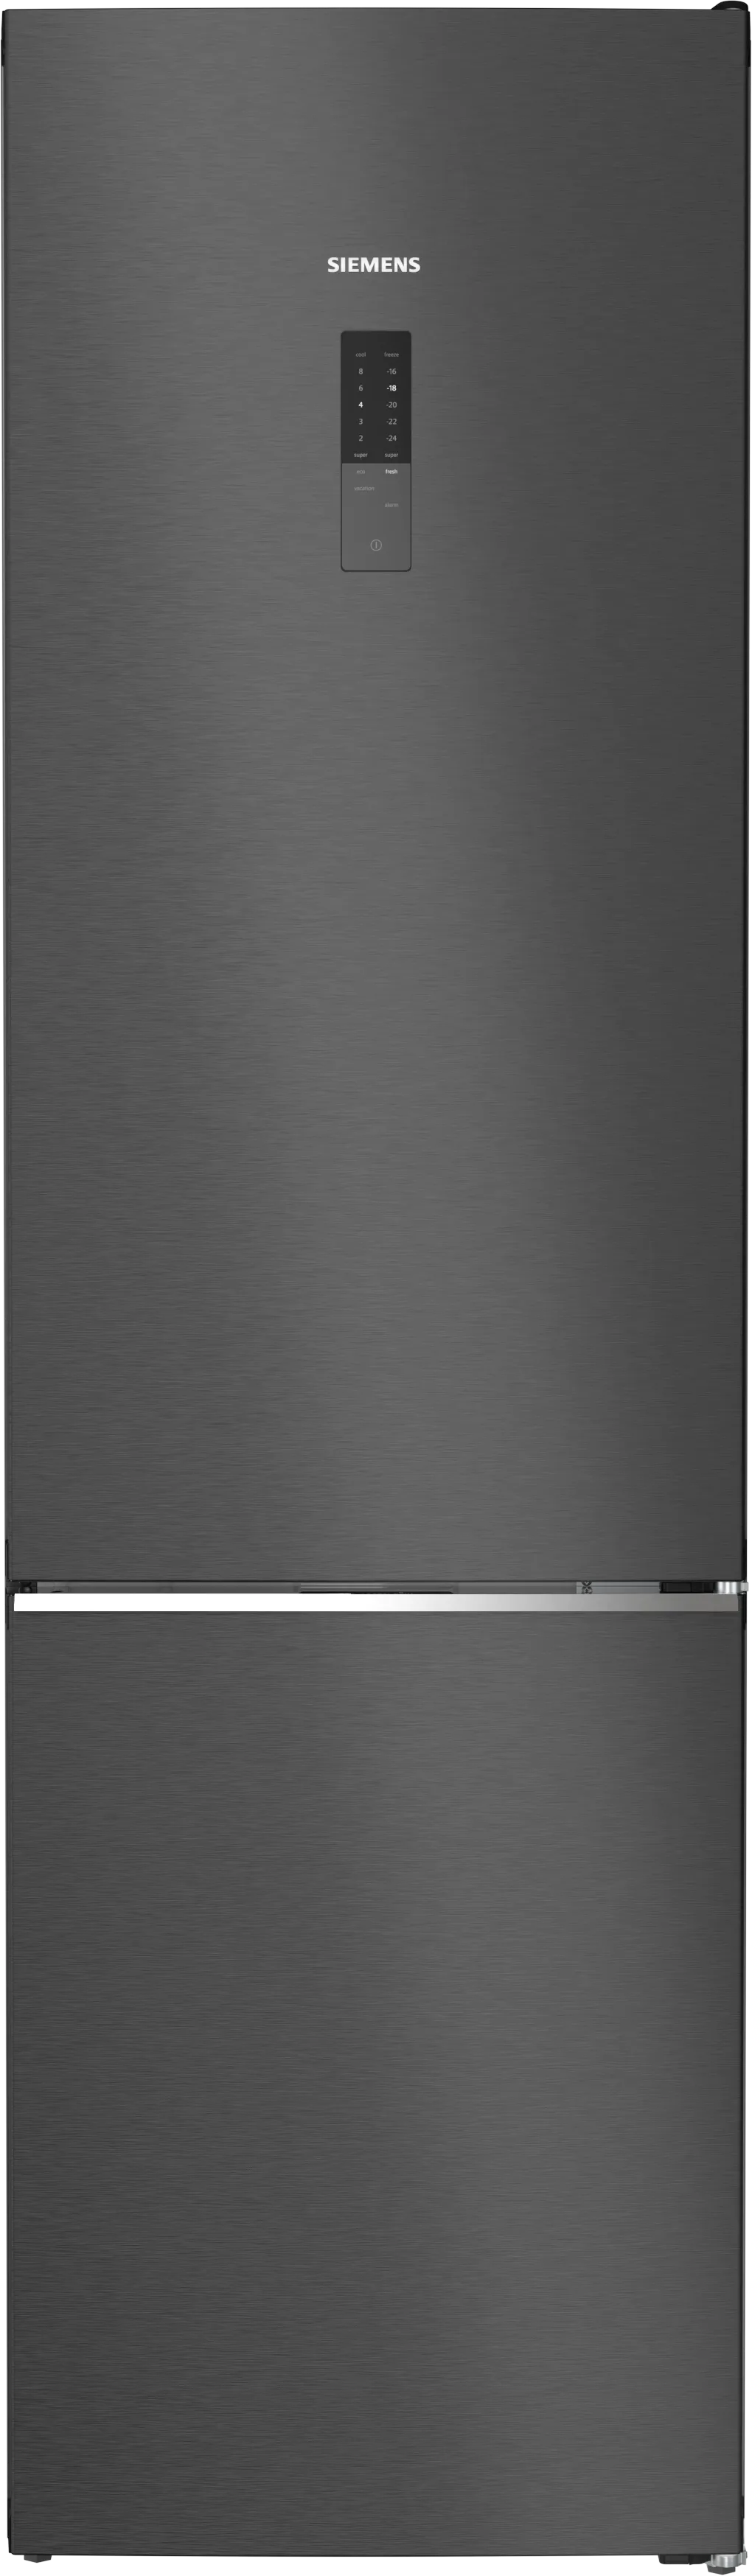 iQ500 Freistehende Kühl-Gefrier-Kombination mit Gefrierbereich unten 203 x 60 cm BlackSteel 